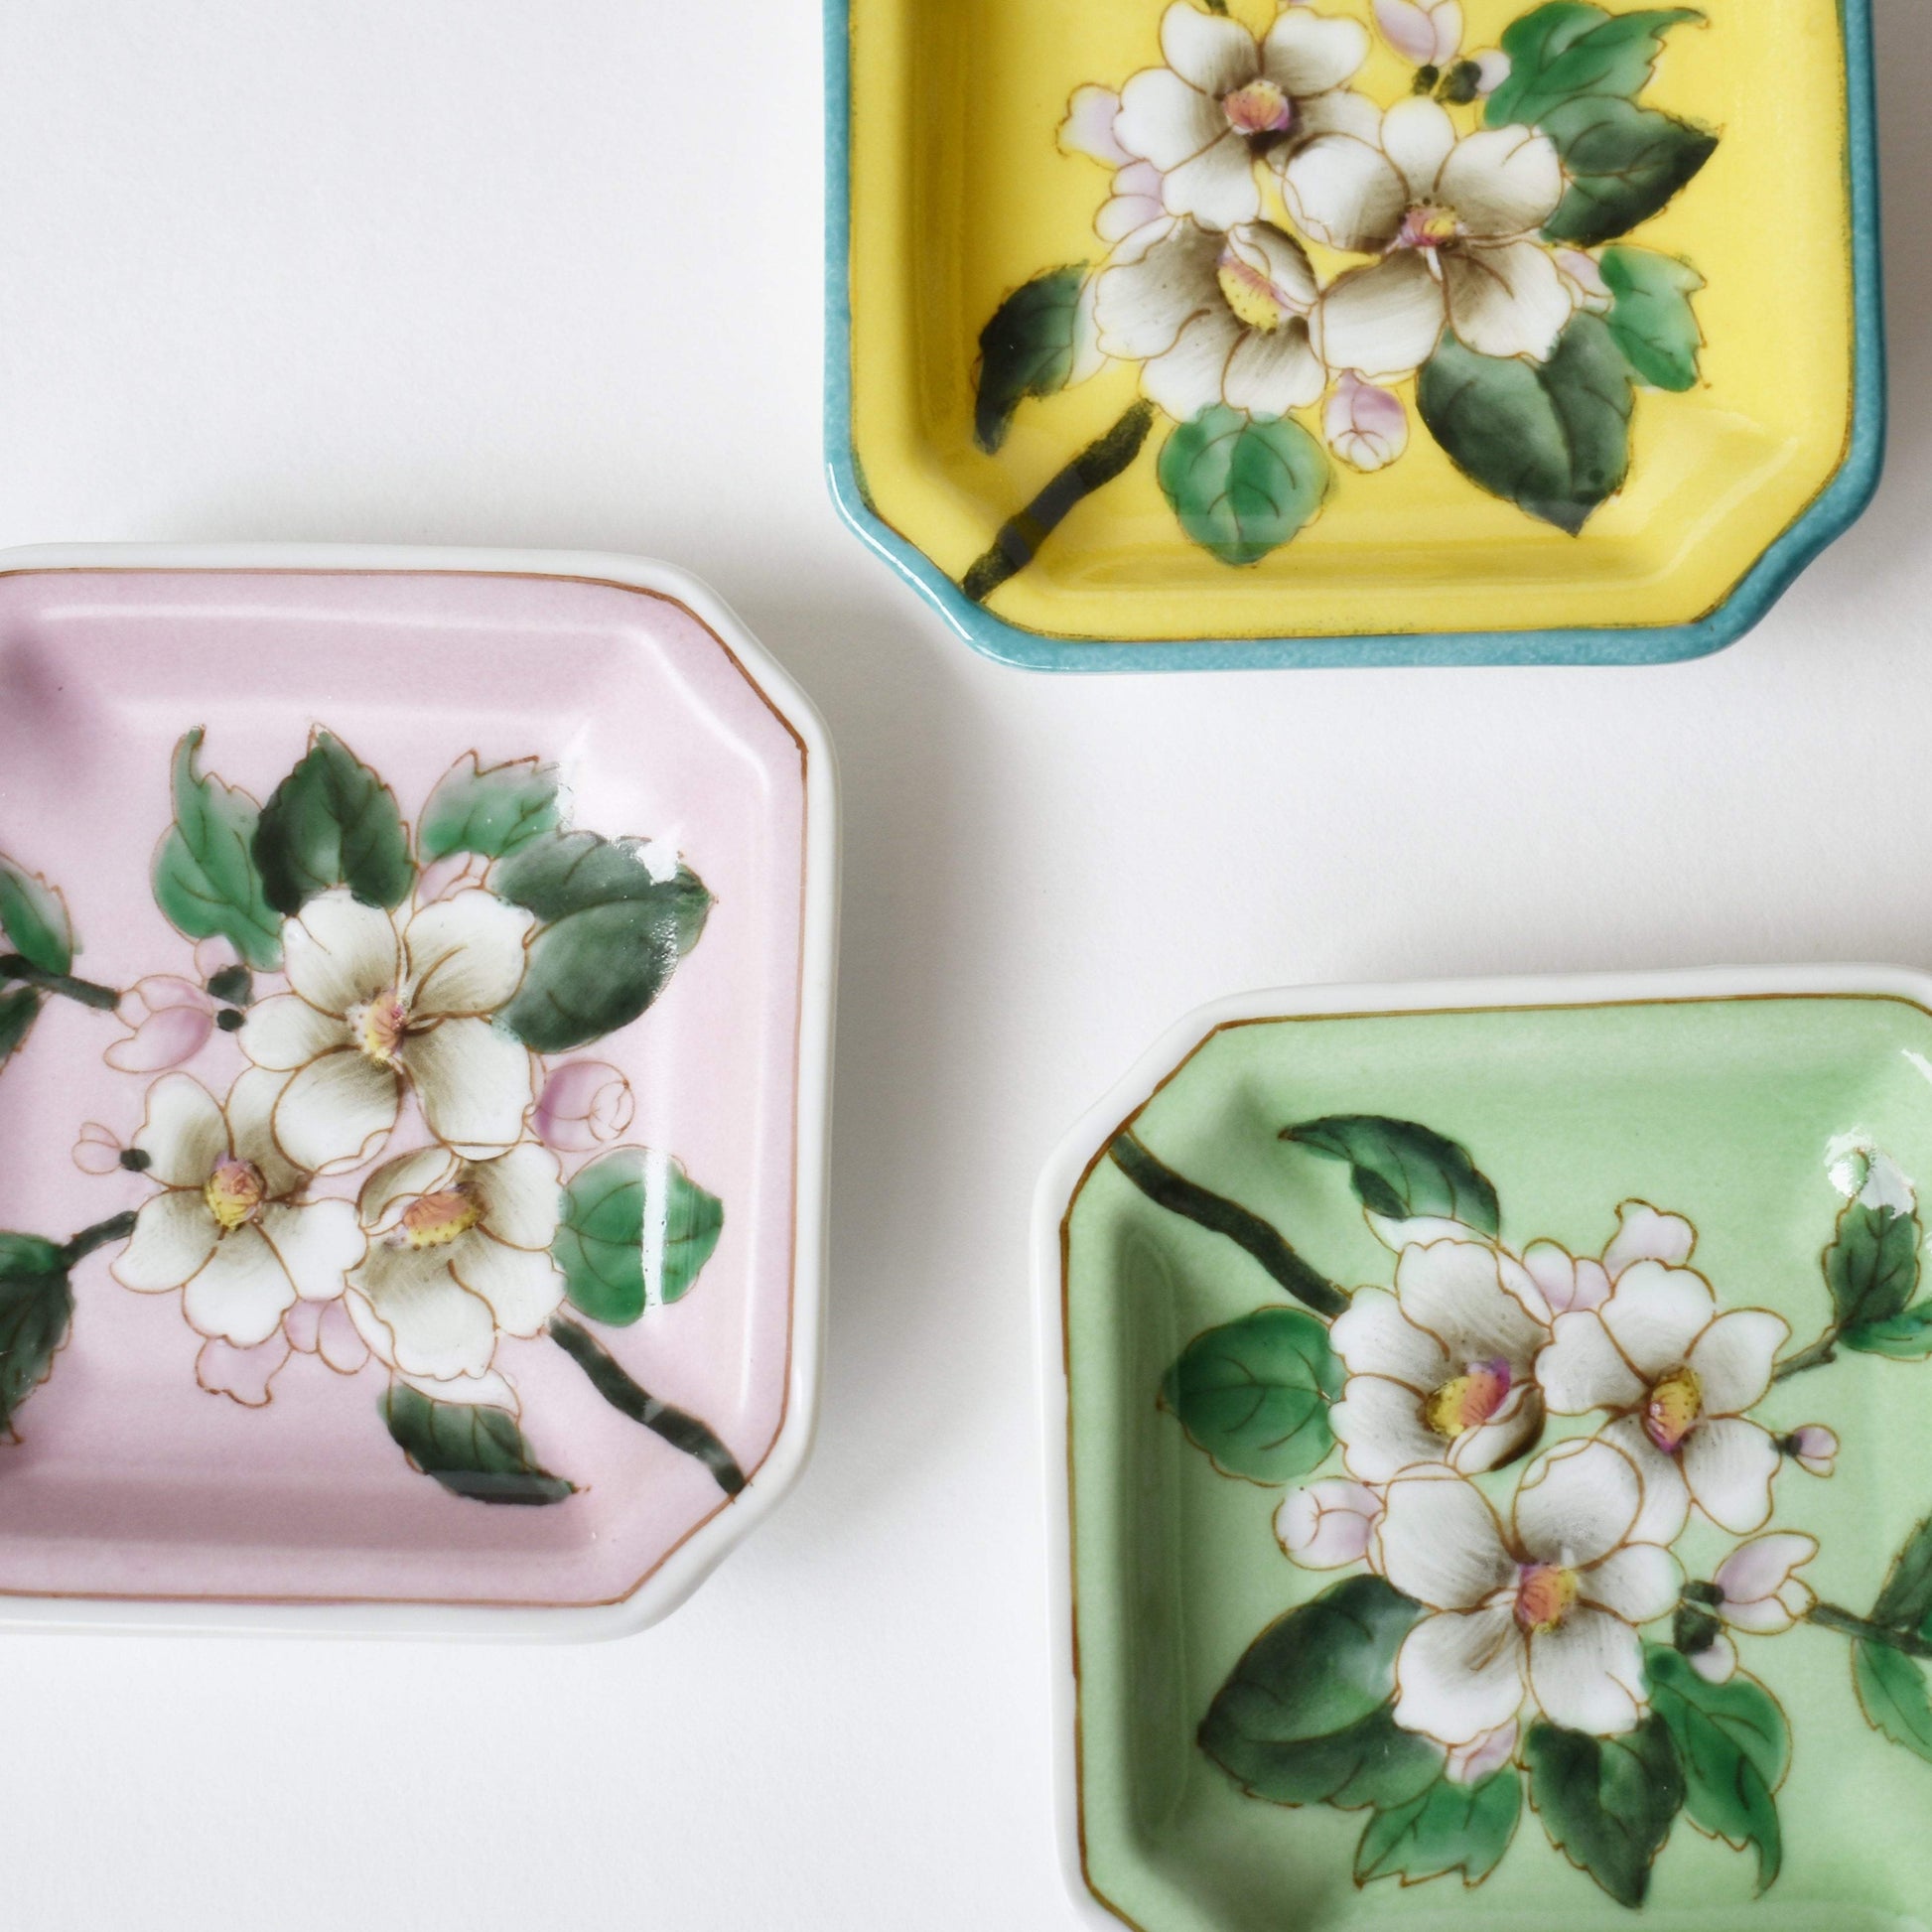 Trinket Dish - JI'AN JIARU Hand Painted, Ceramic Art, Trinket Dish, Pink